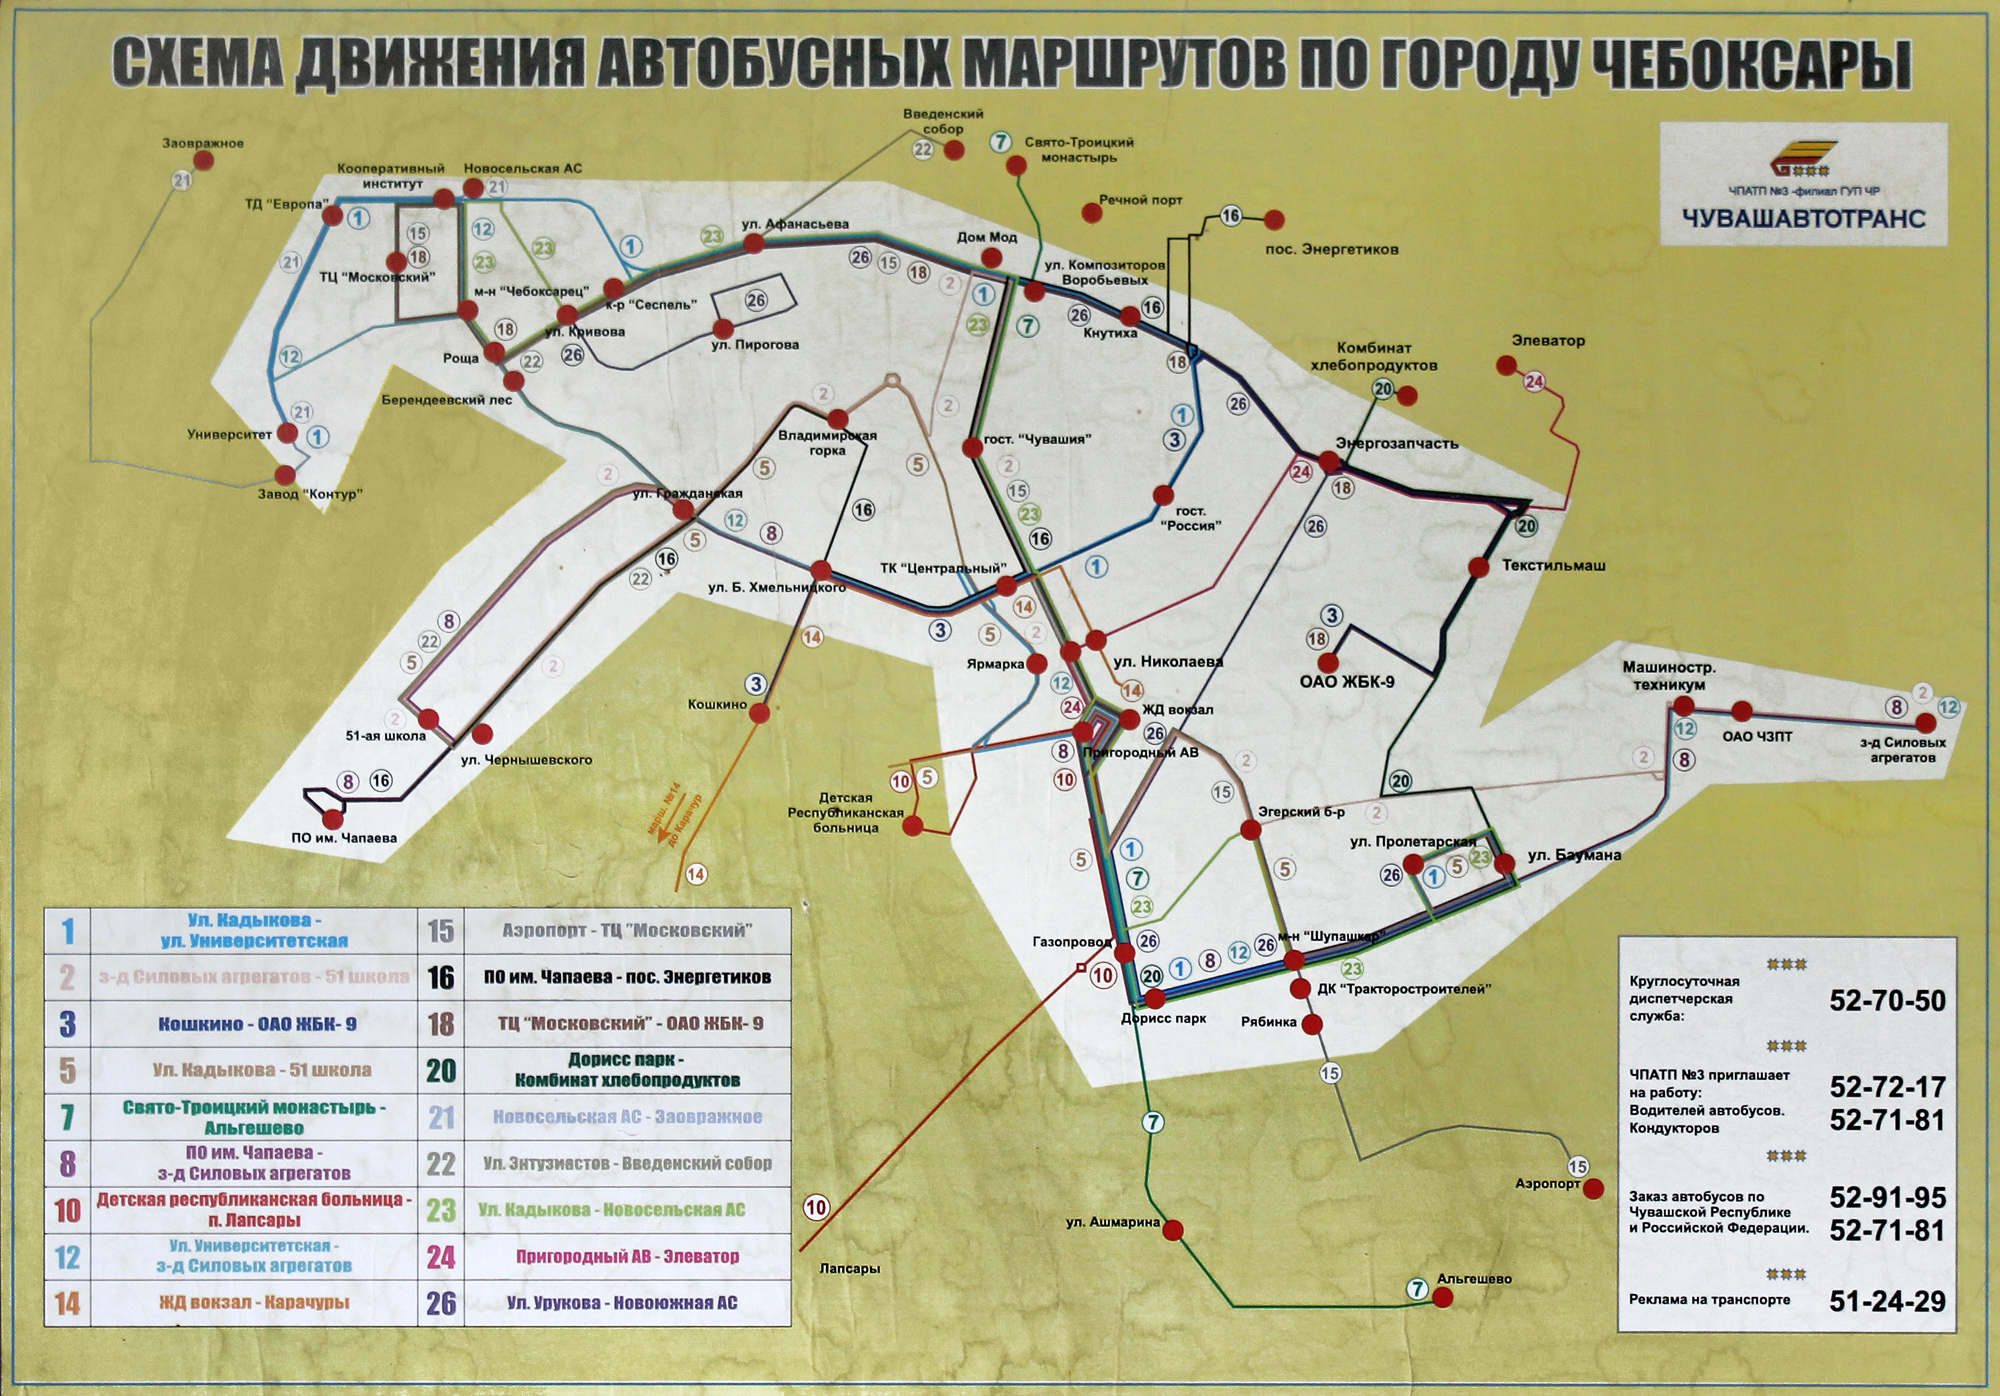 Аэропорт во владимире: описание, расположение, маршруты на карте